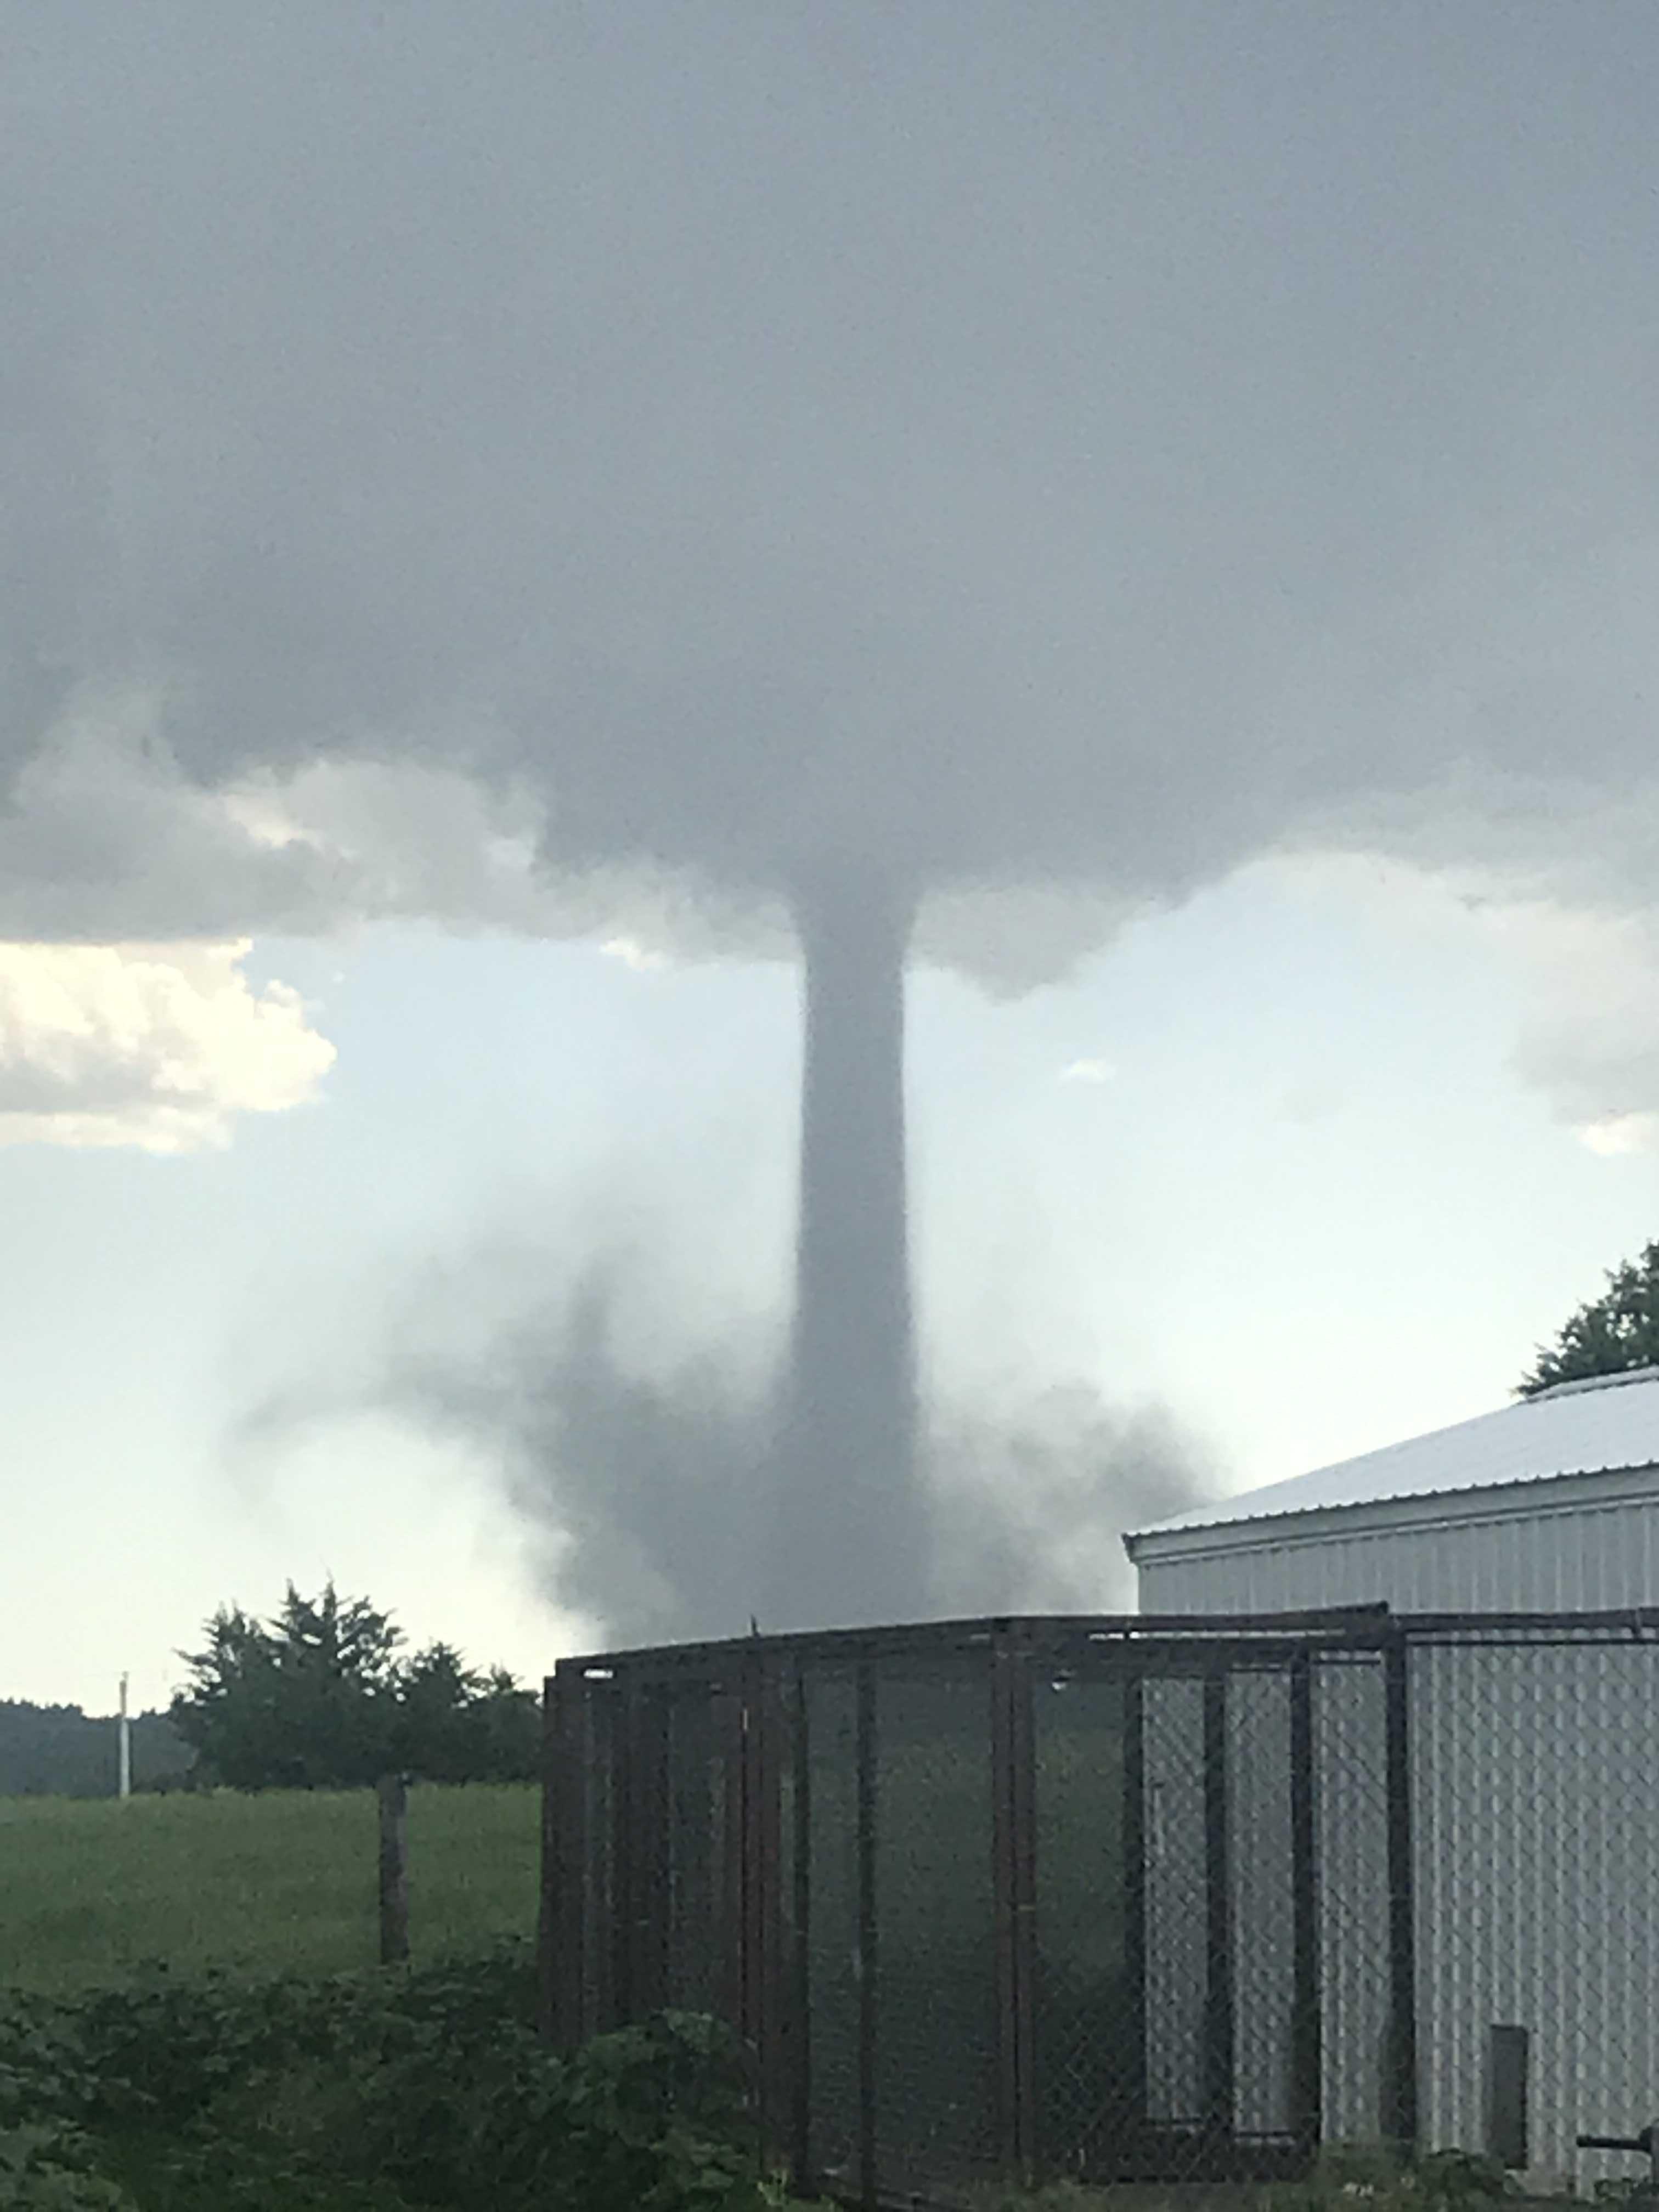 Tornado near Allen, SD